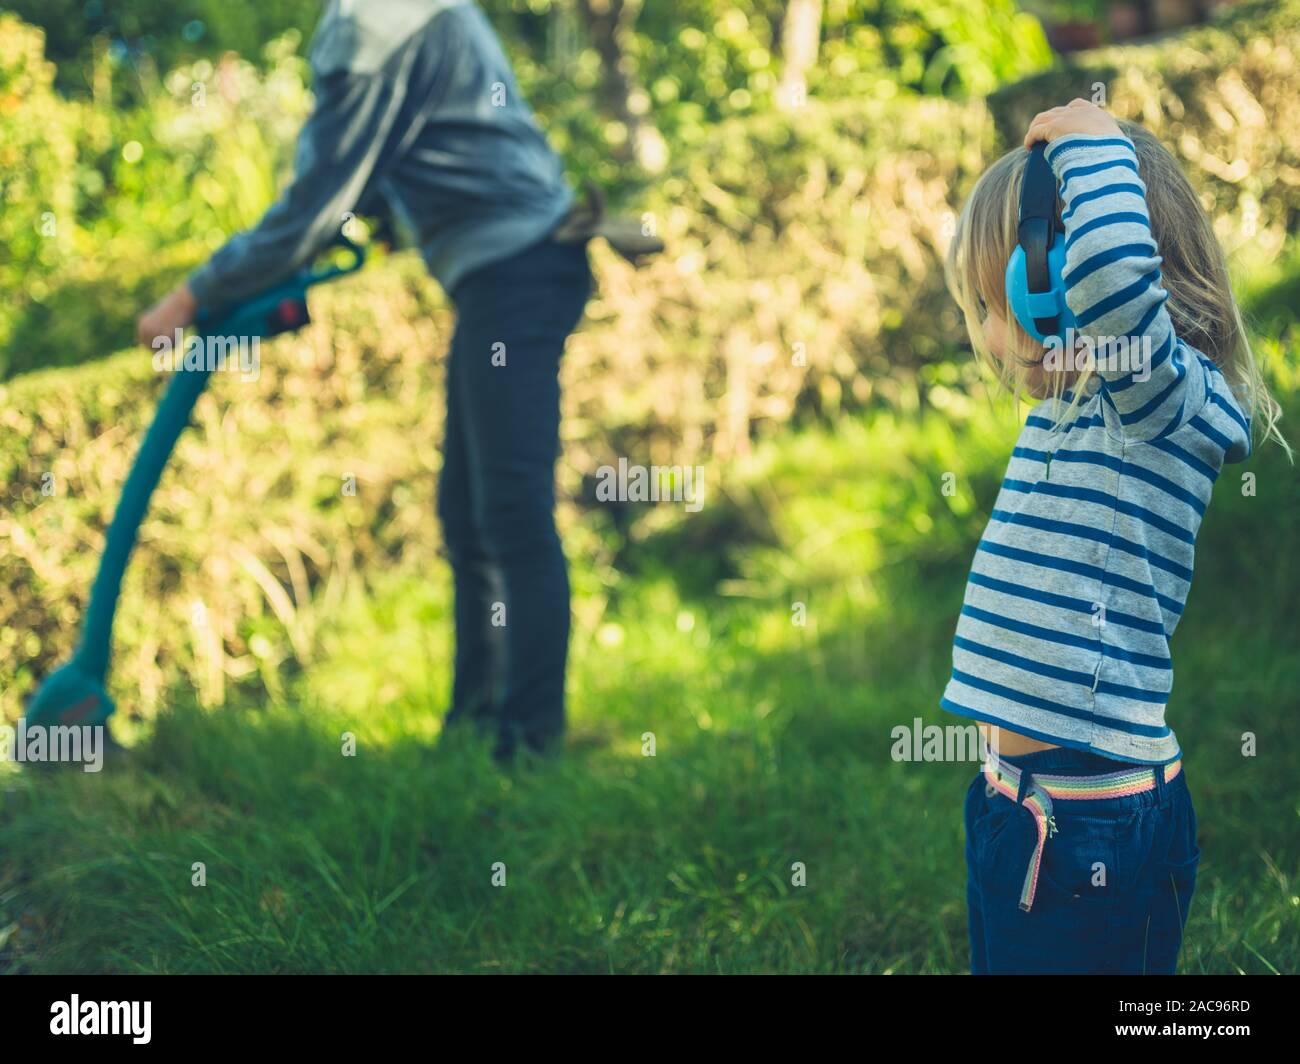 Ein kleines Kind das Tragen von Gehörschutz ist gerade seine Mutter strim den Rasen in Ihrem Garten Stockfoto